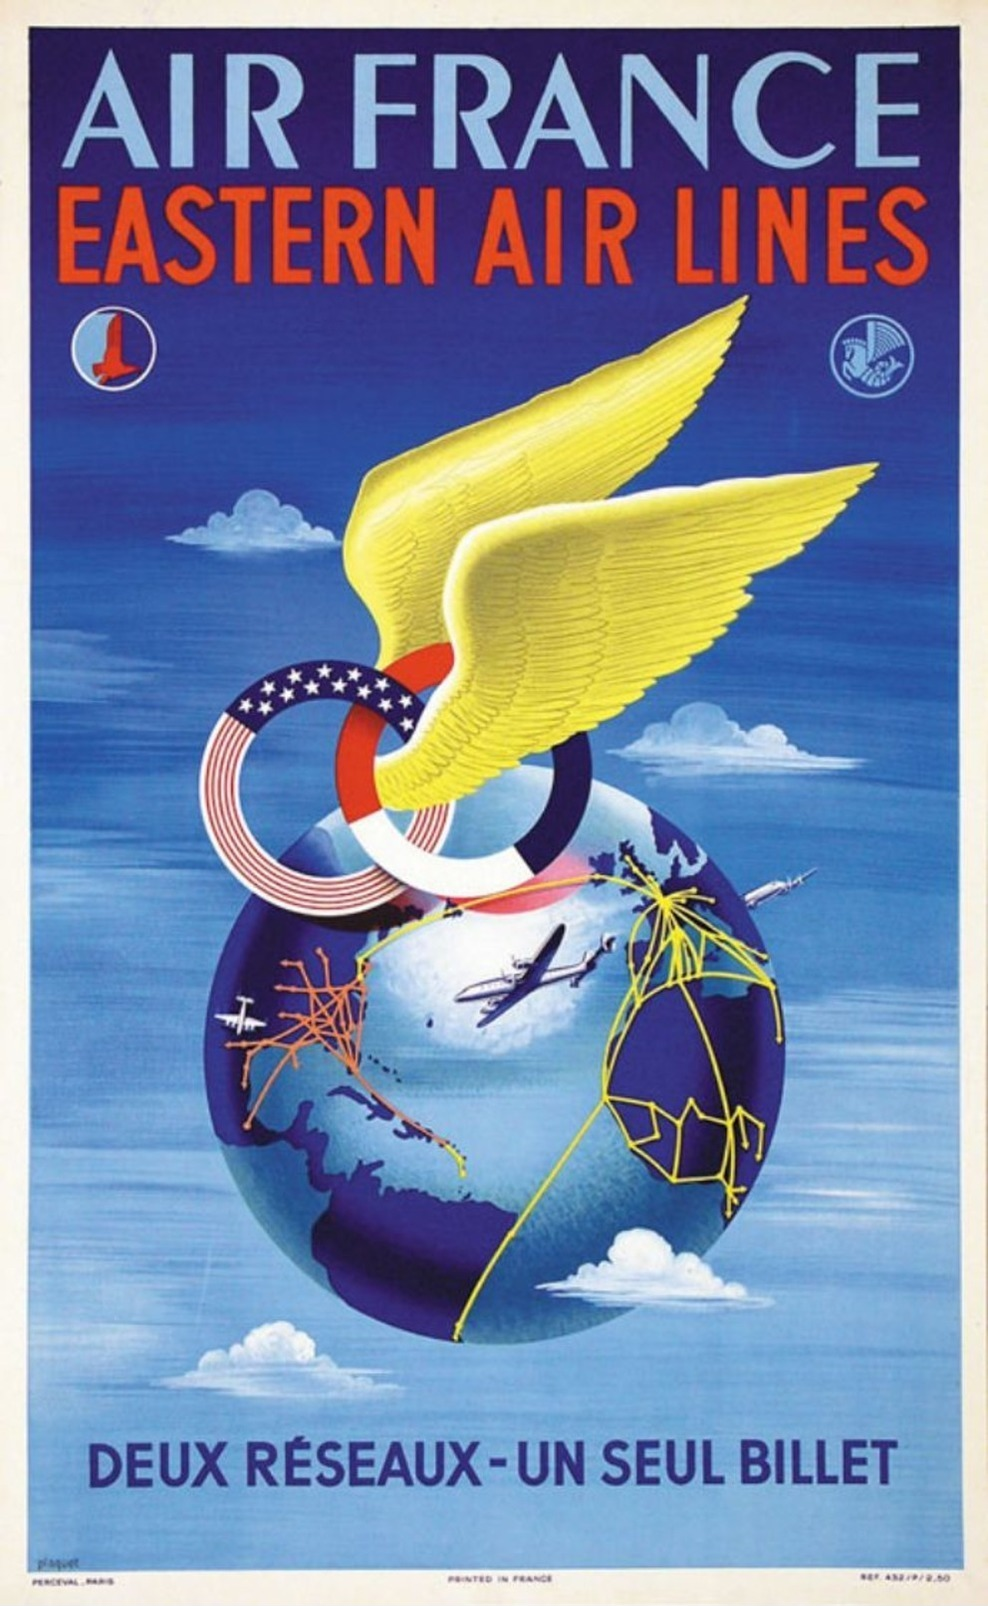 Air France Eastern Air Lines 1950 - Postcard - Poster Reproduction - Publicité